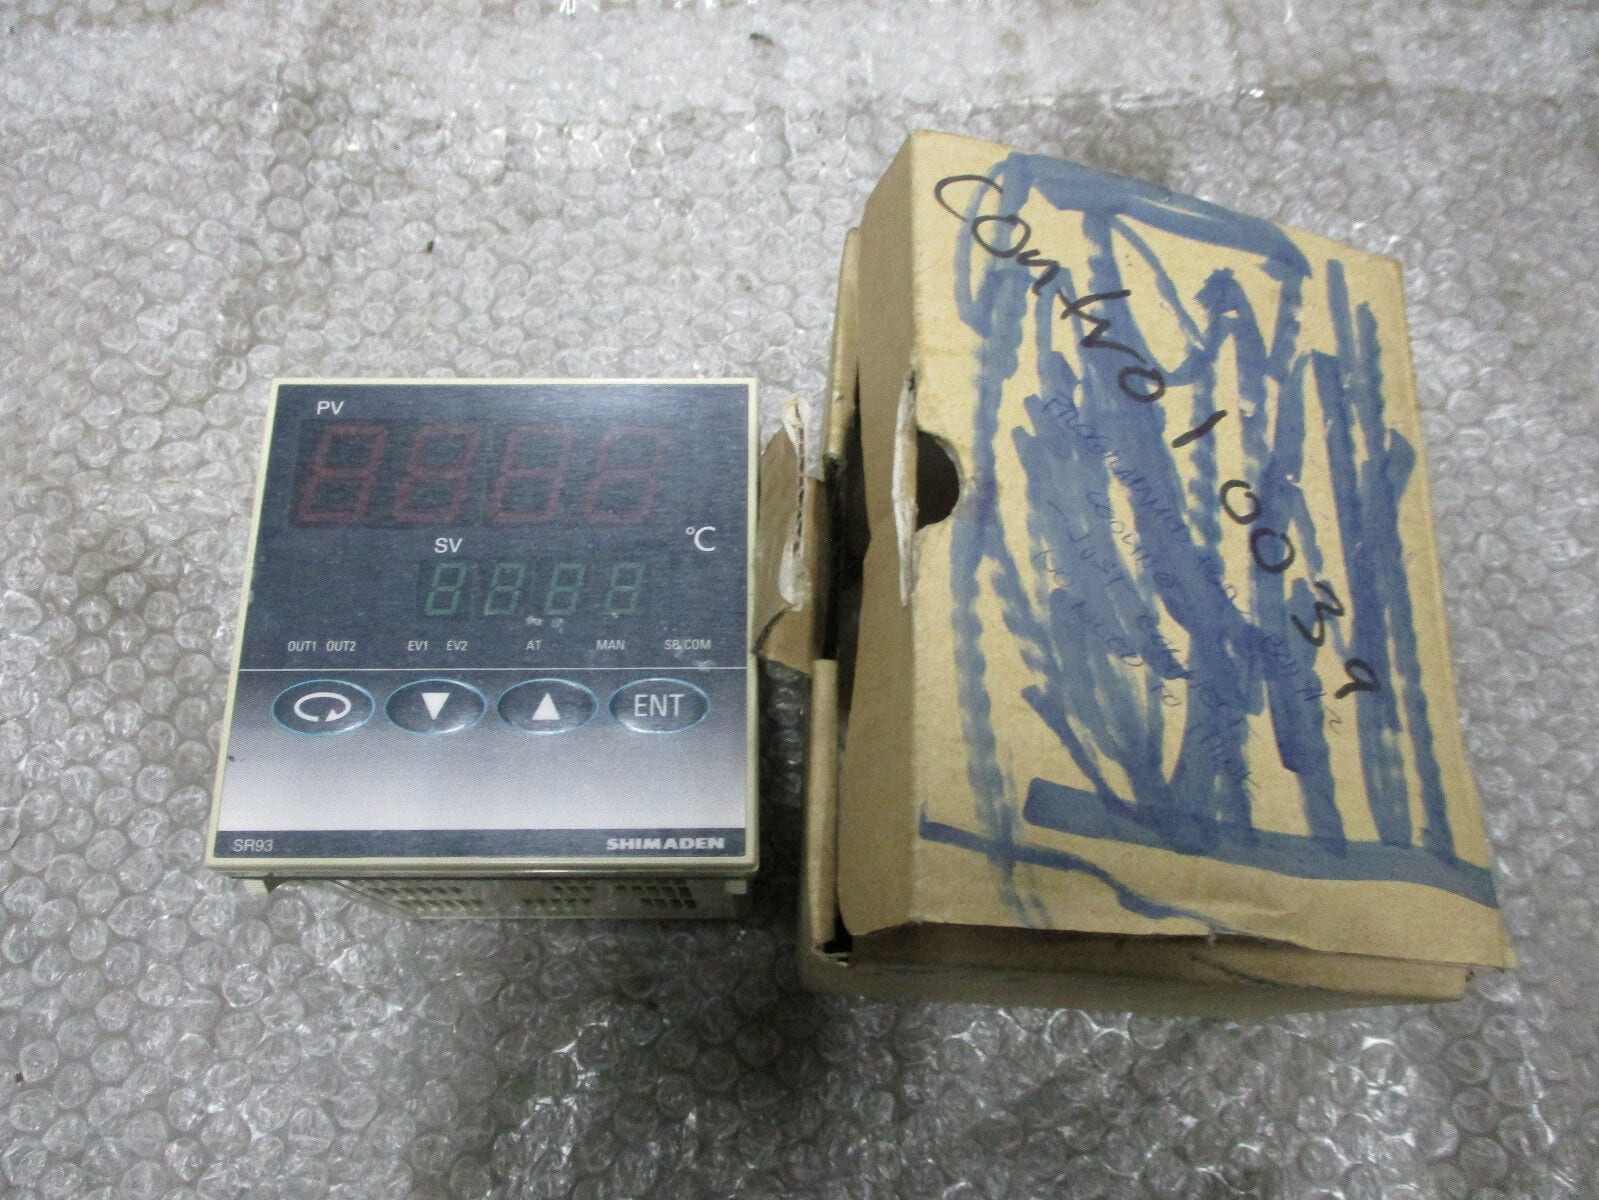 Used SHIMADEN SR93-8Y-N-90-0000 Temperature Controller